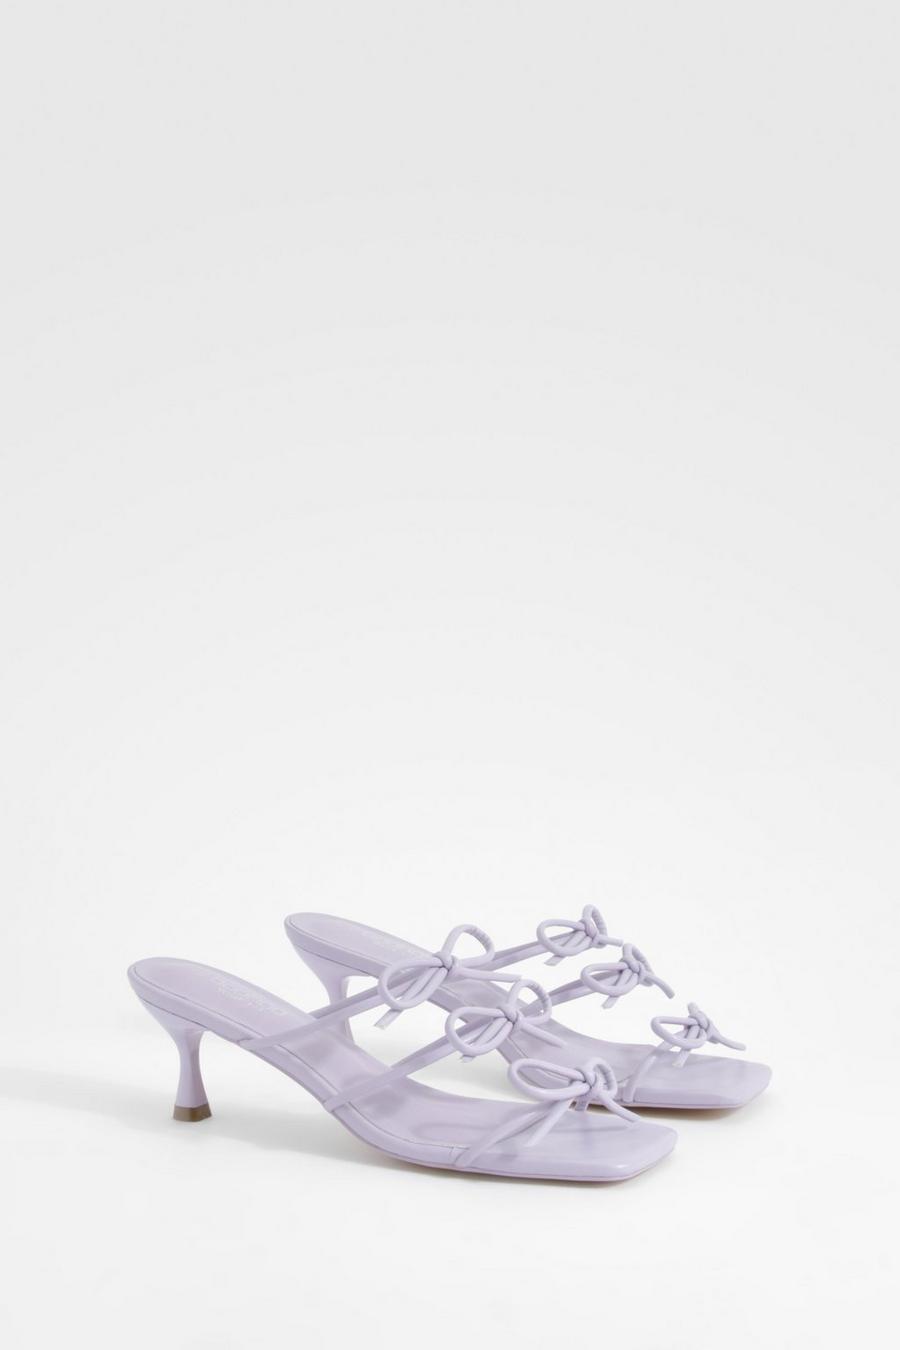 Sandali Mules a calzata ampia con fiocco e tacco basso, Lilac